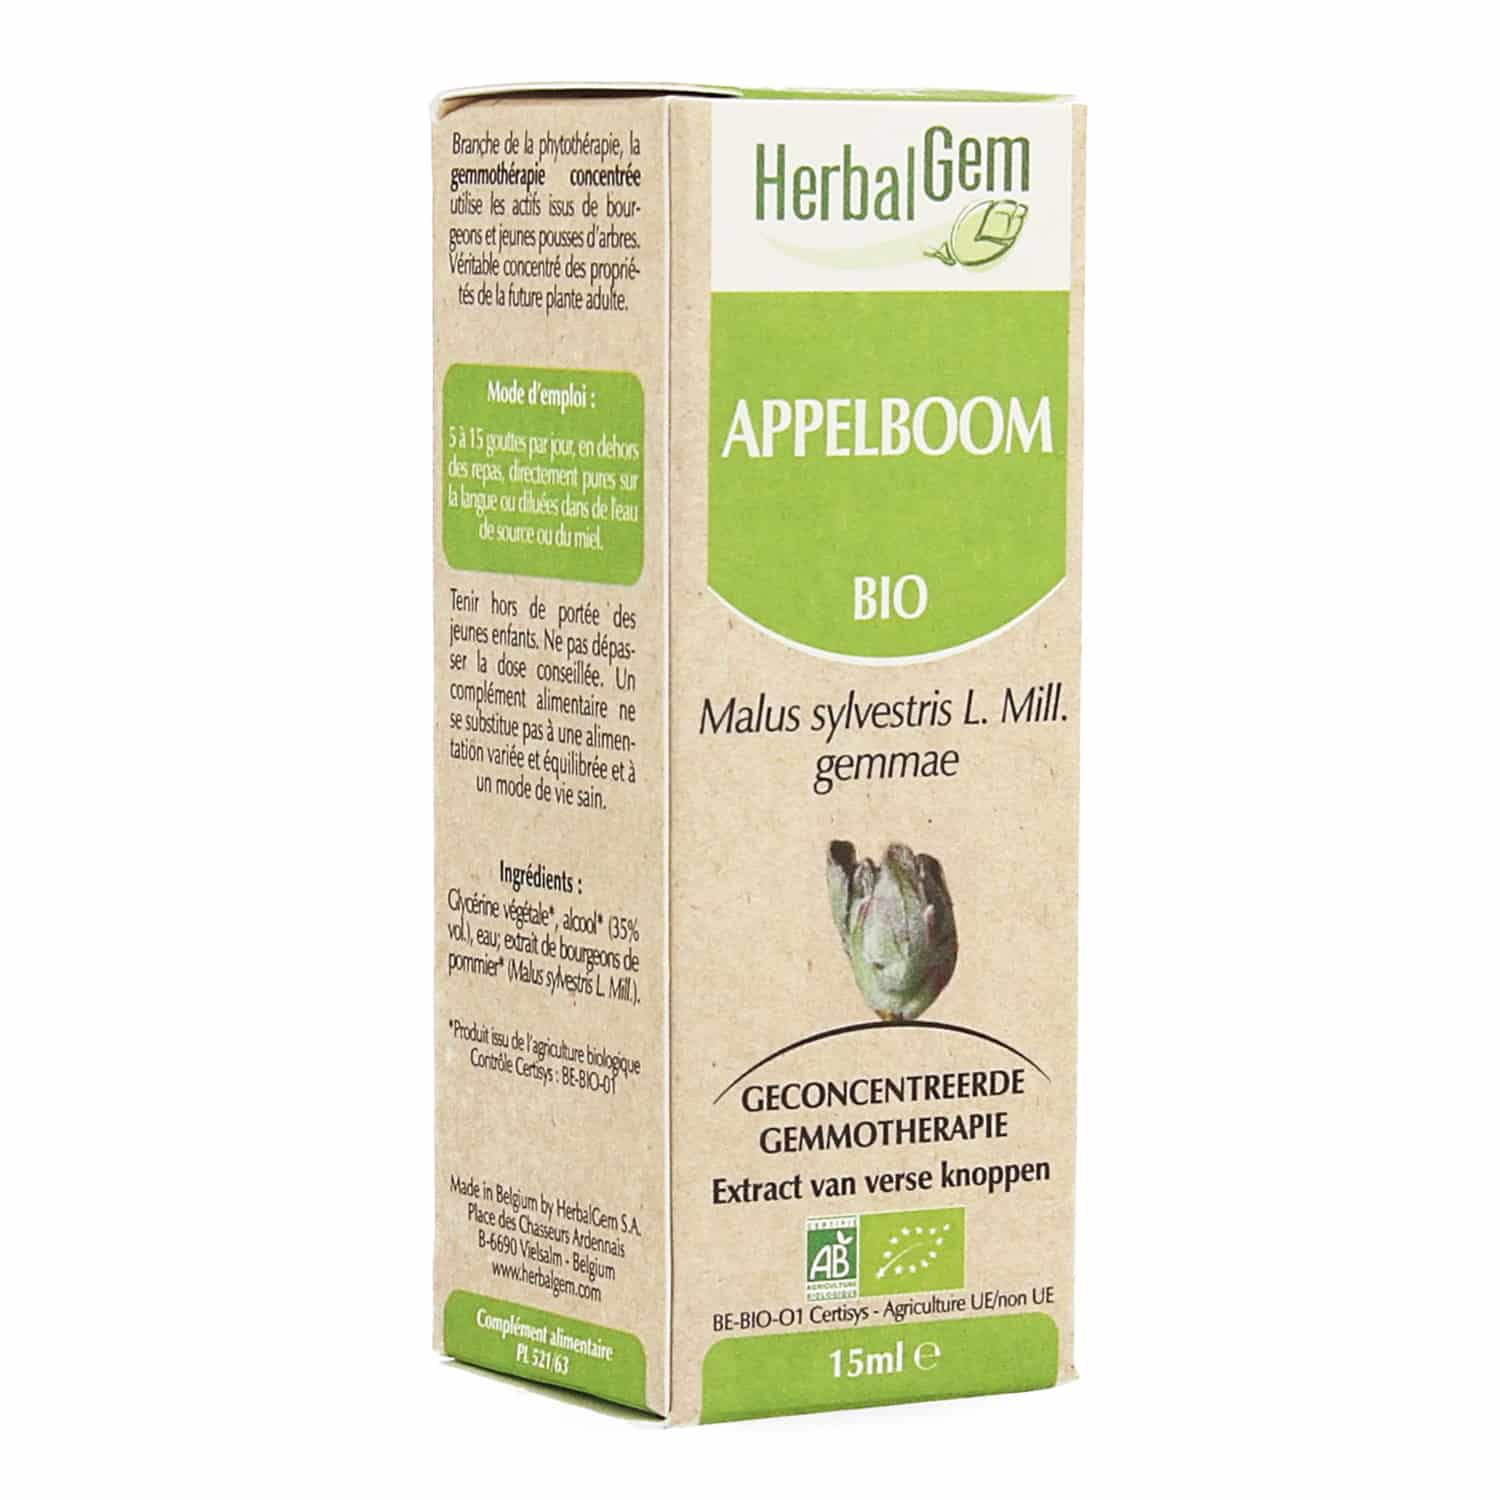 HerbalGem Appelboom